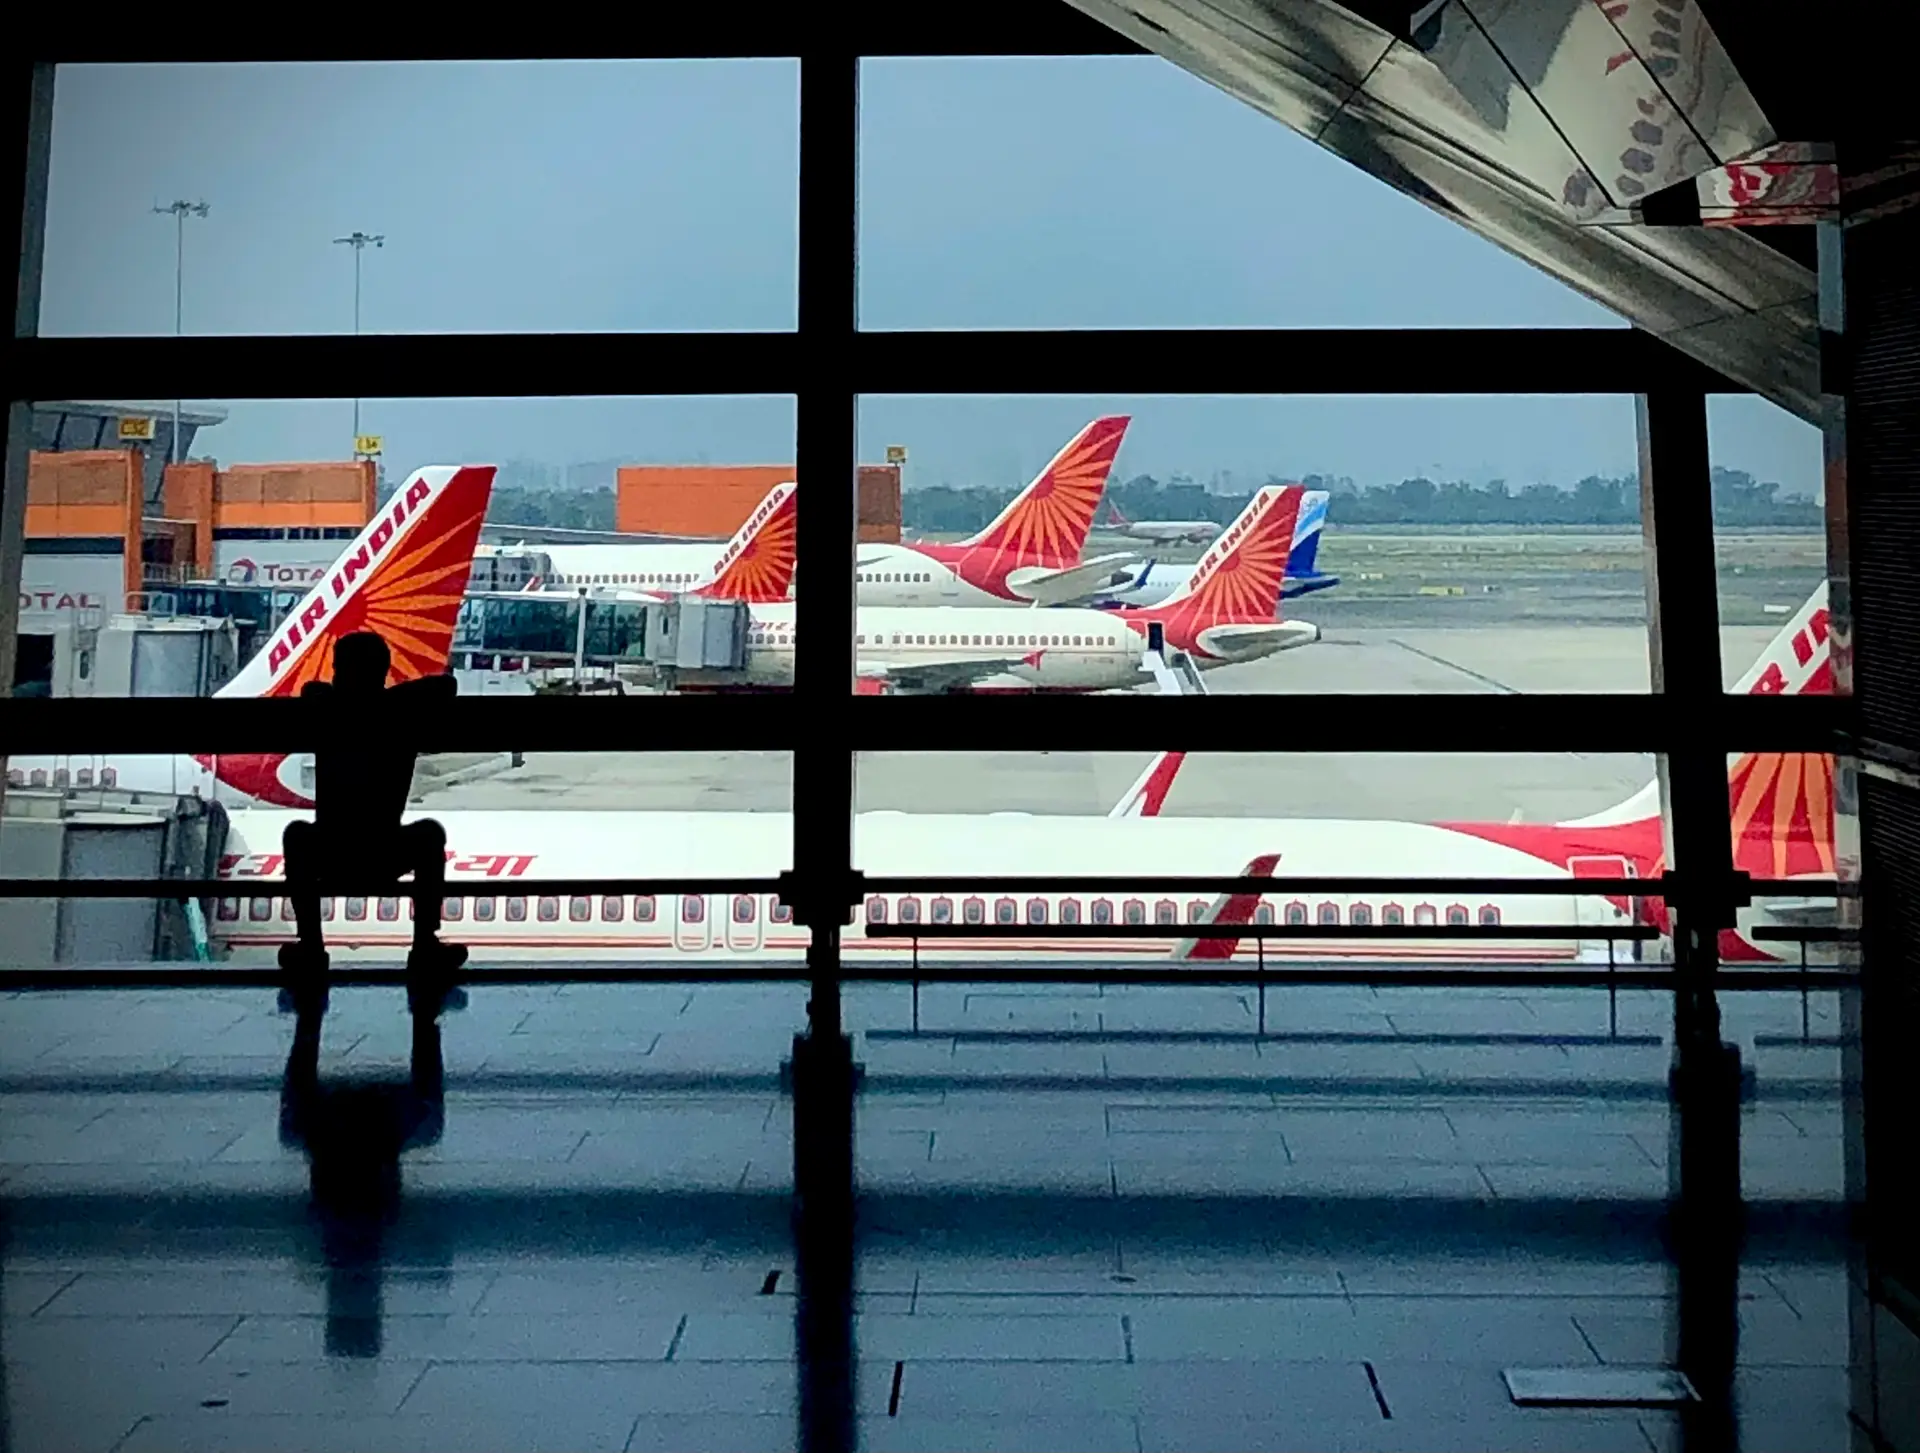 Polícia indiana detém homem acusado de urinar sobre mulher em voo da Air India